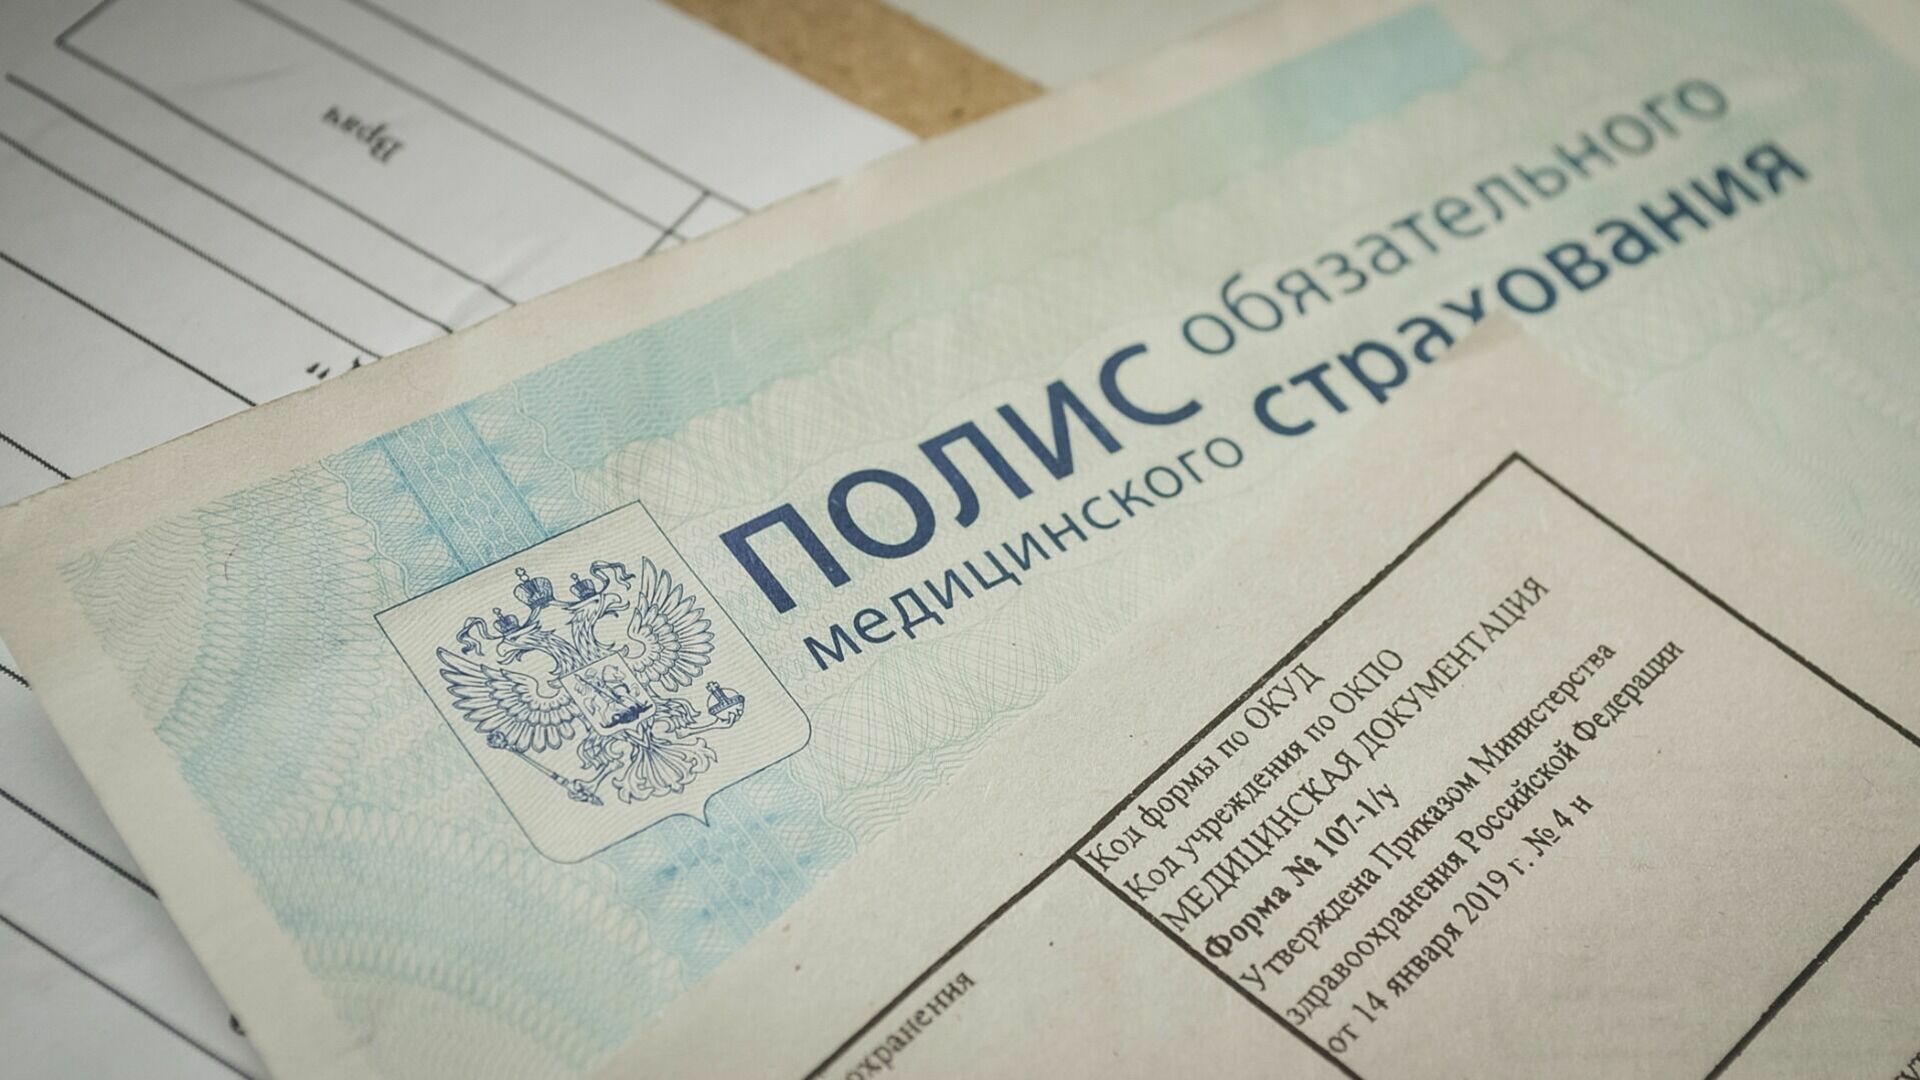 Удмуртия на 13 месте в рейтинге минздрава РФ по доступности записи к врачу